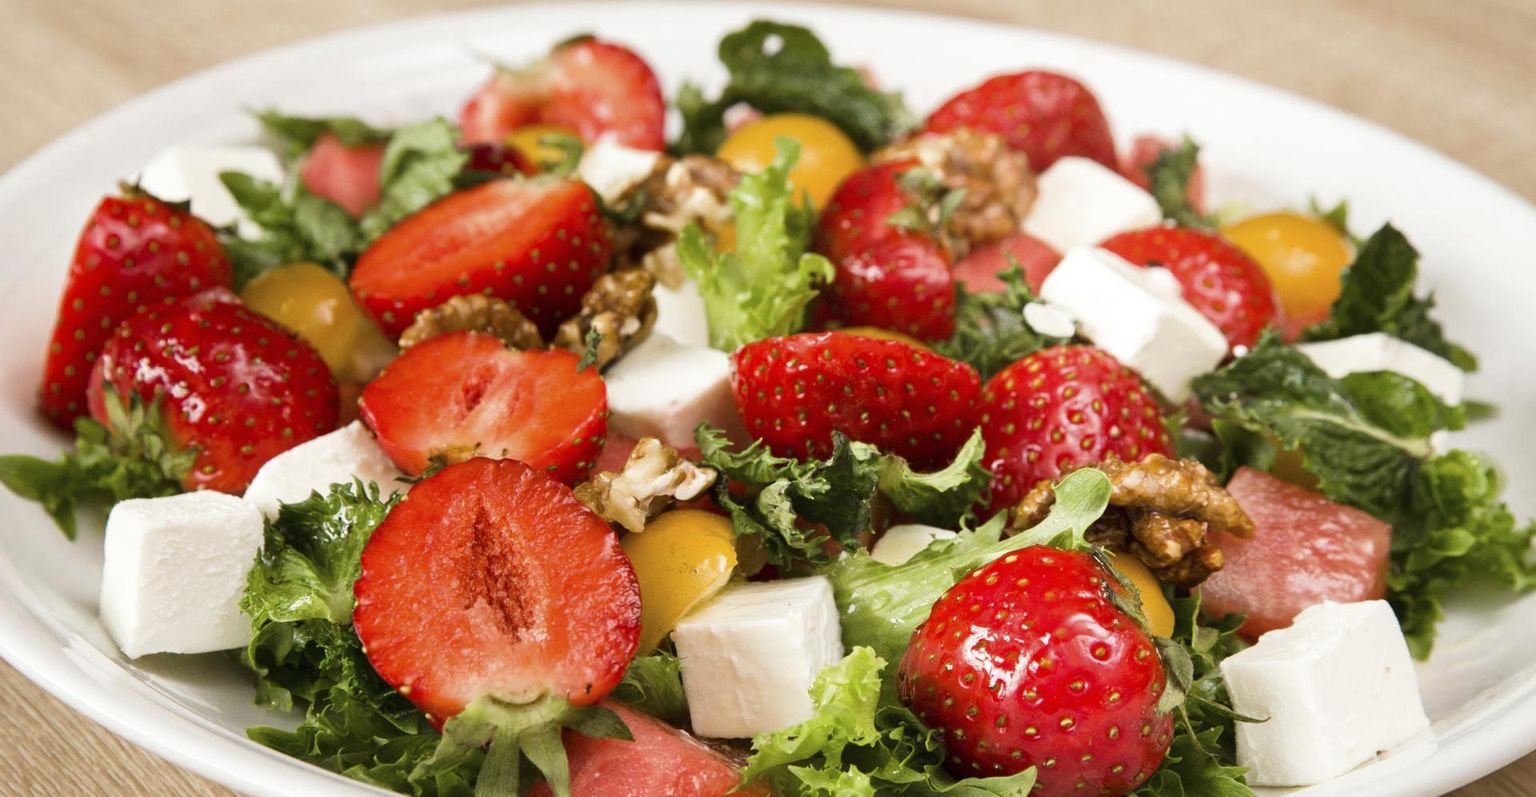 Ilus ja mahlane: maasika-, arbuusi- ja fetasalat. Kooslusesse sobib ka sinihallitus- või grilljuust.